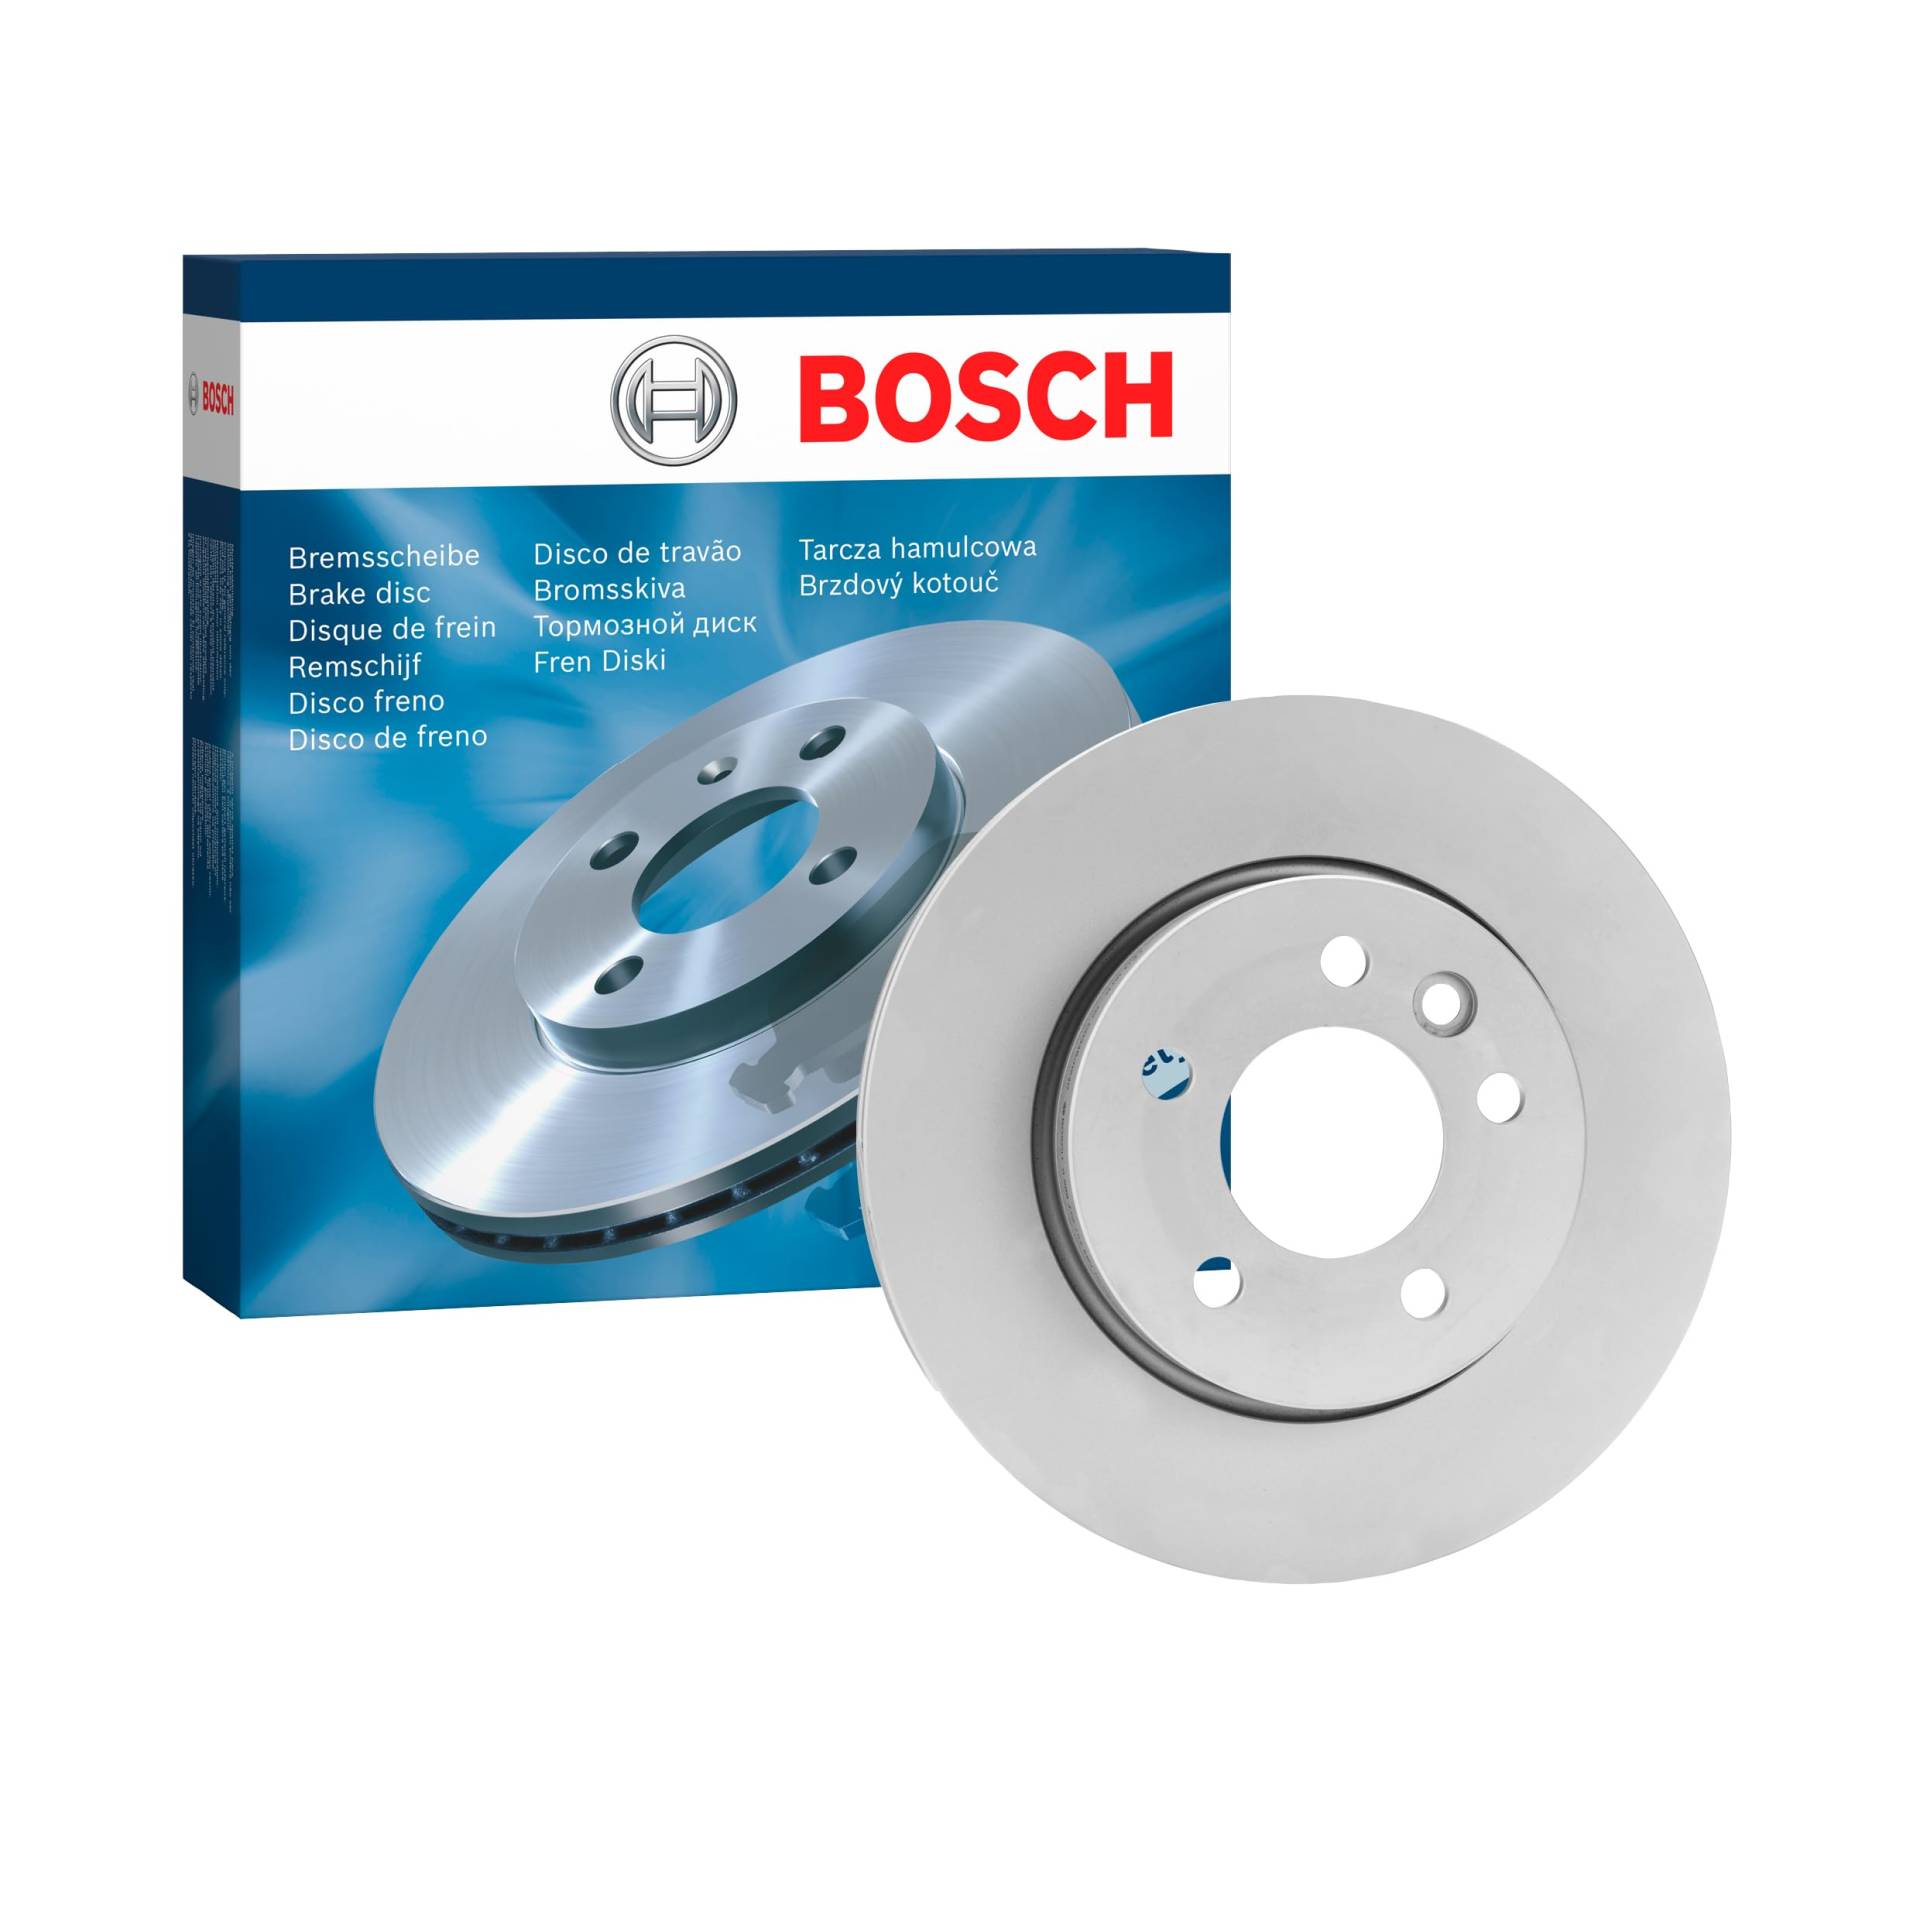 Bosch BD1647 Bremsscheiben - Vorderachse - ECE-R90 Zertifizierung - eine Bremsscheibe von Bosch Automotive